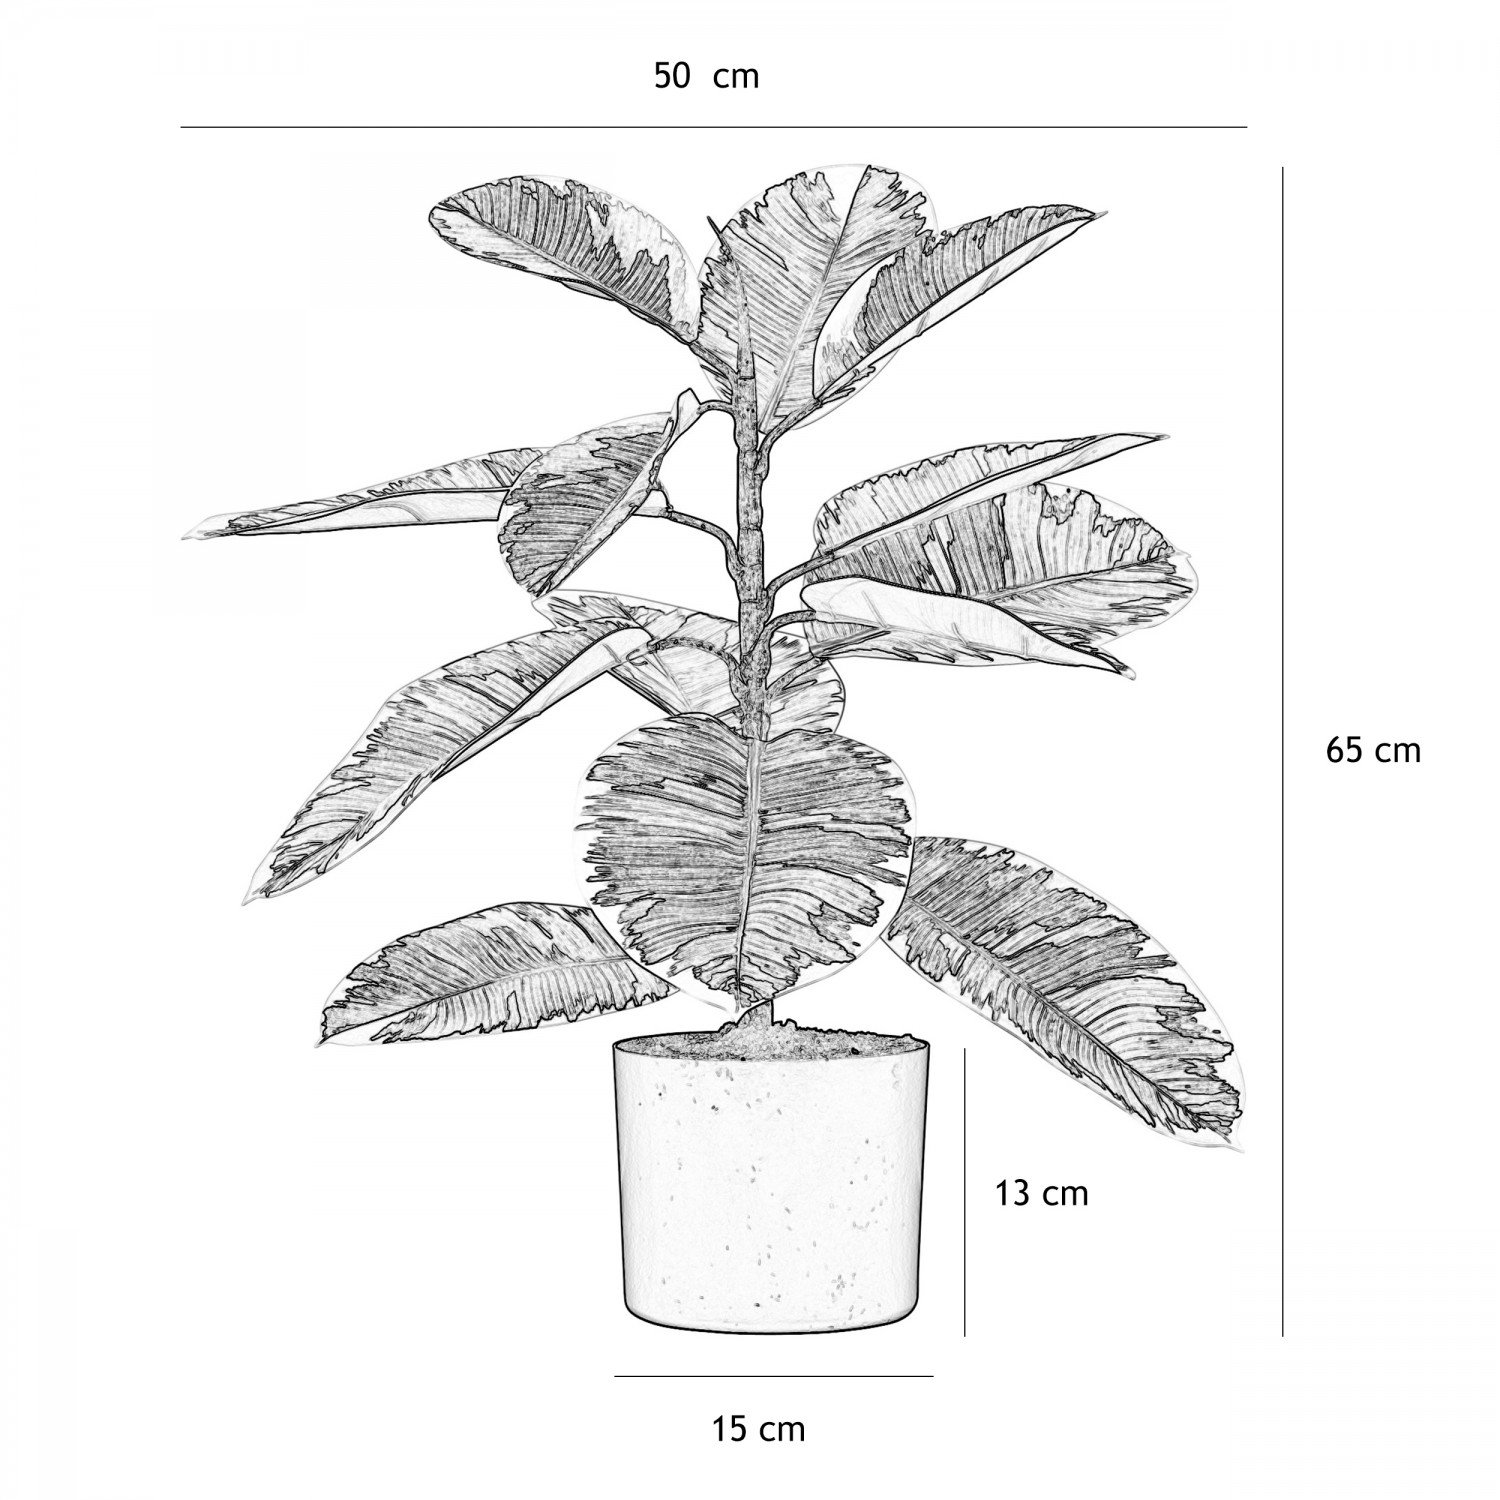 Plante verte artificielle caoutchouc 65cm graphique avec les dimensions